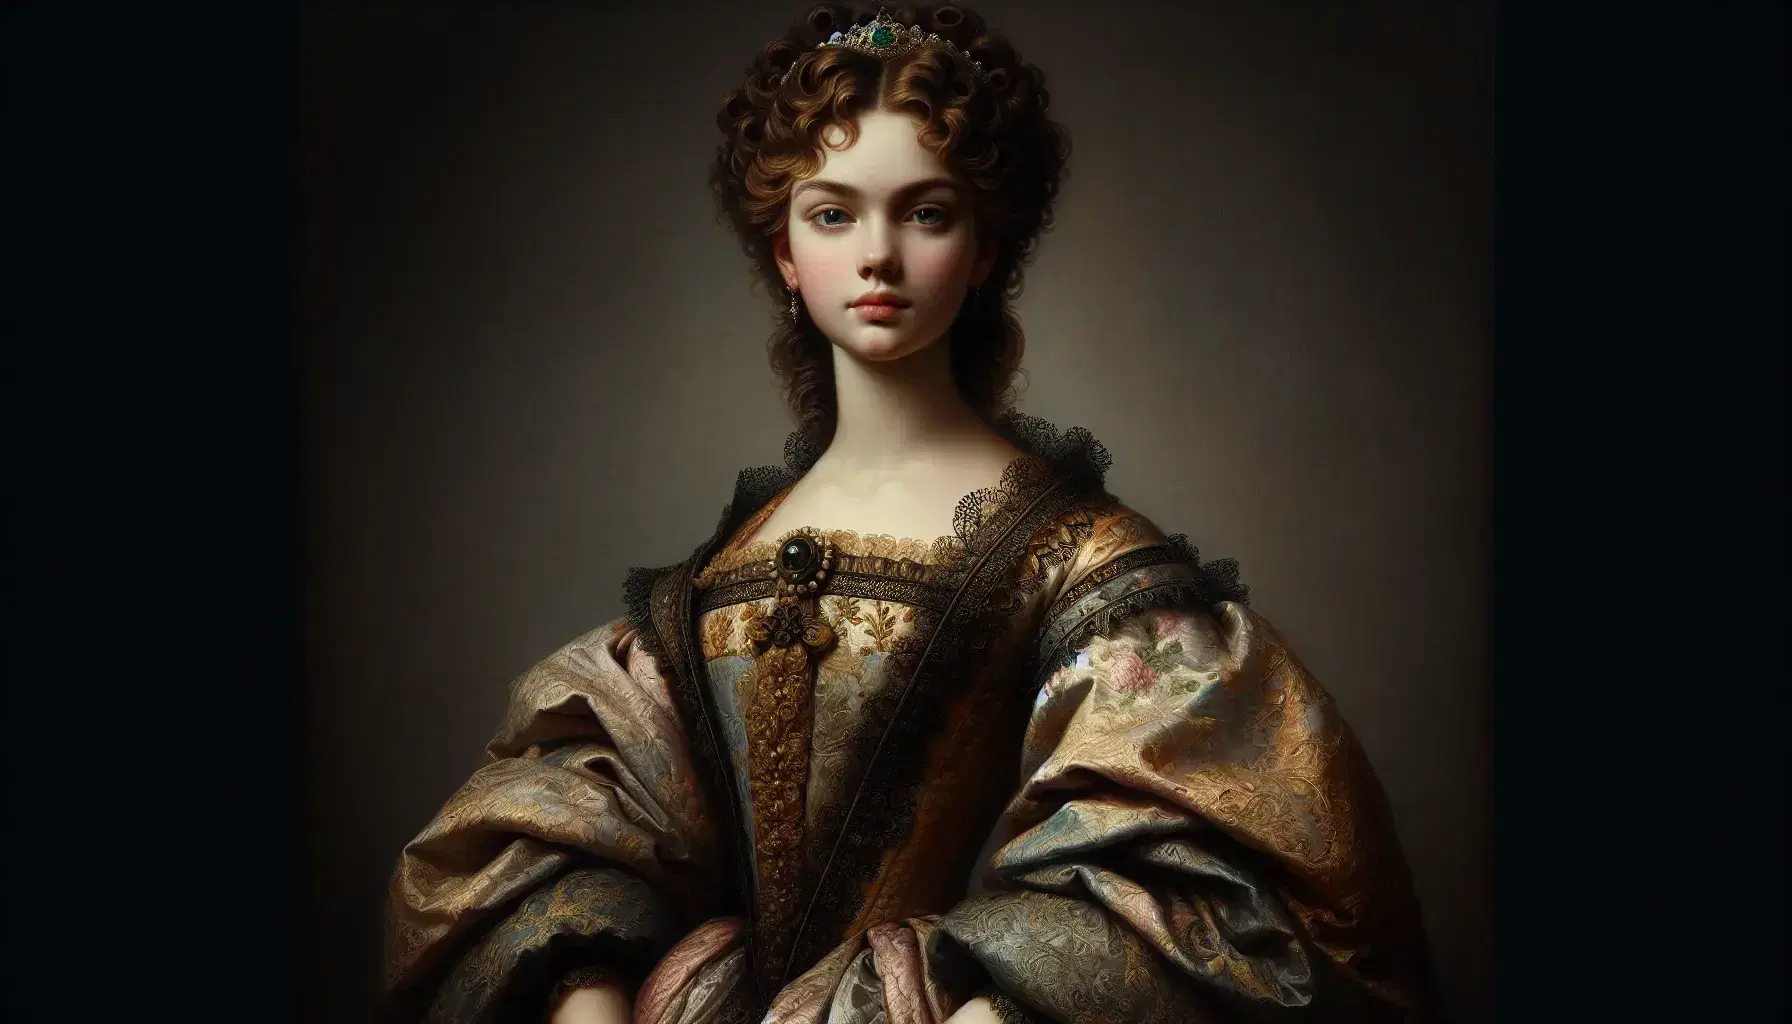 Retrato al óleo de joven mujer del siglo XIX con vestido adornado, capa oscura, tiara y mirada penetrante, sosteniendo un objeto en su mano derecha.